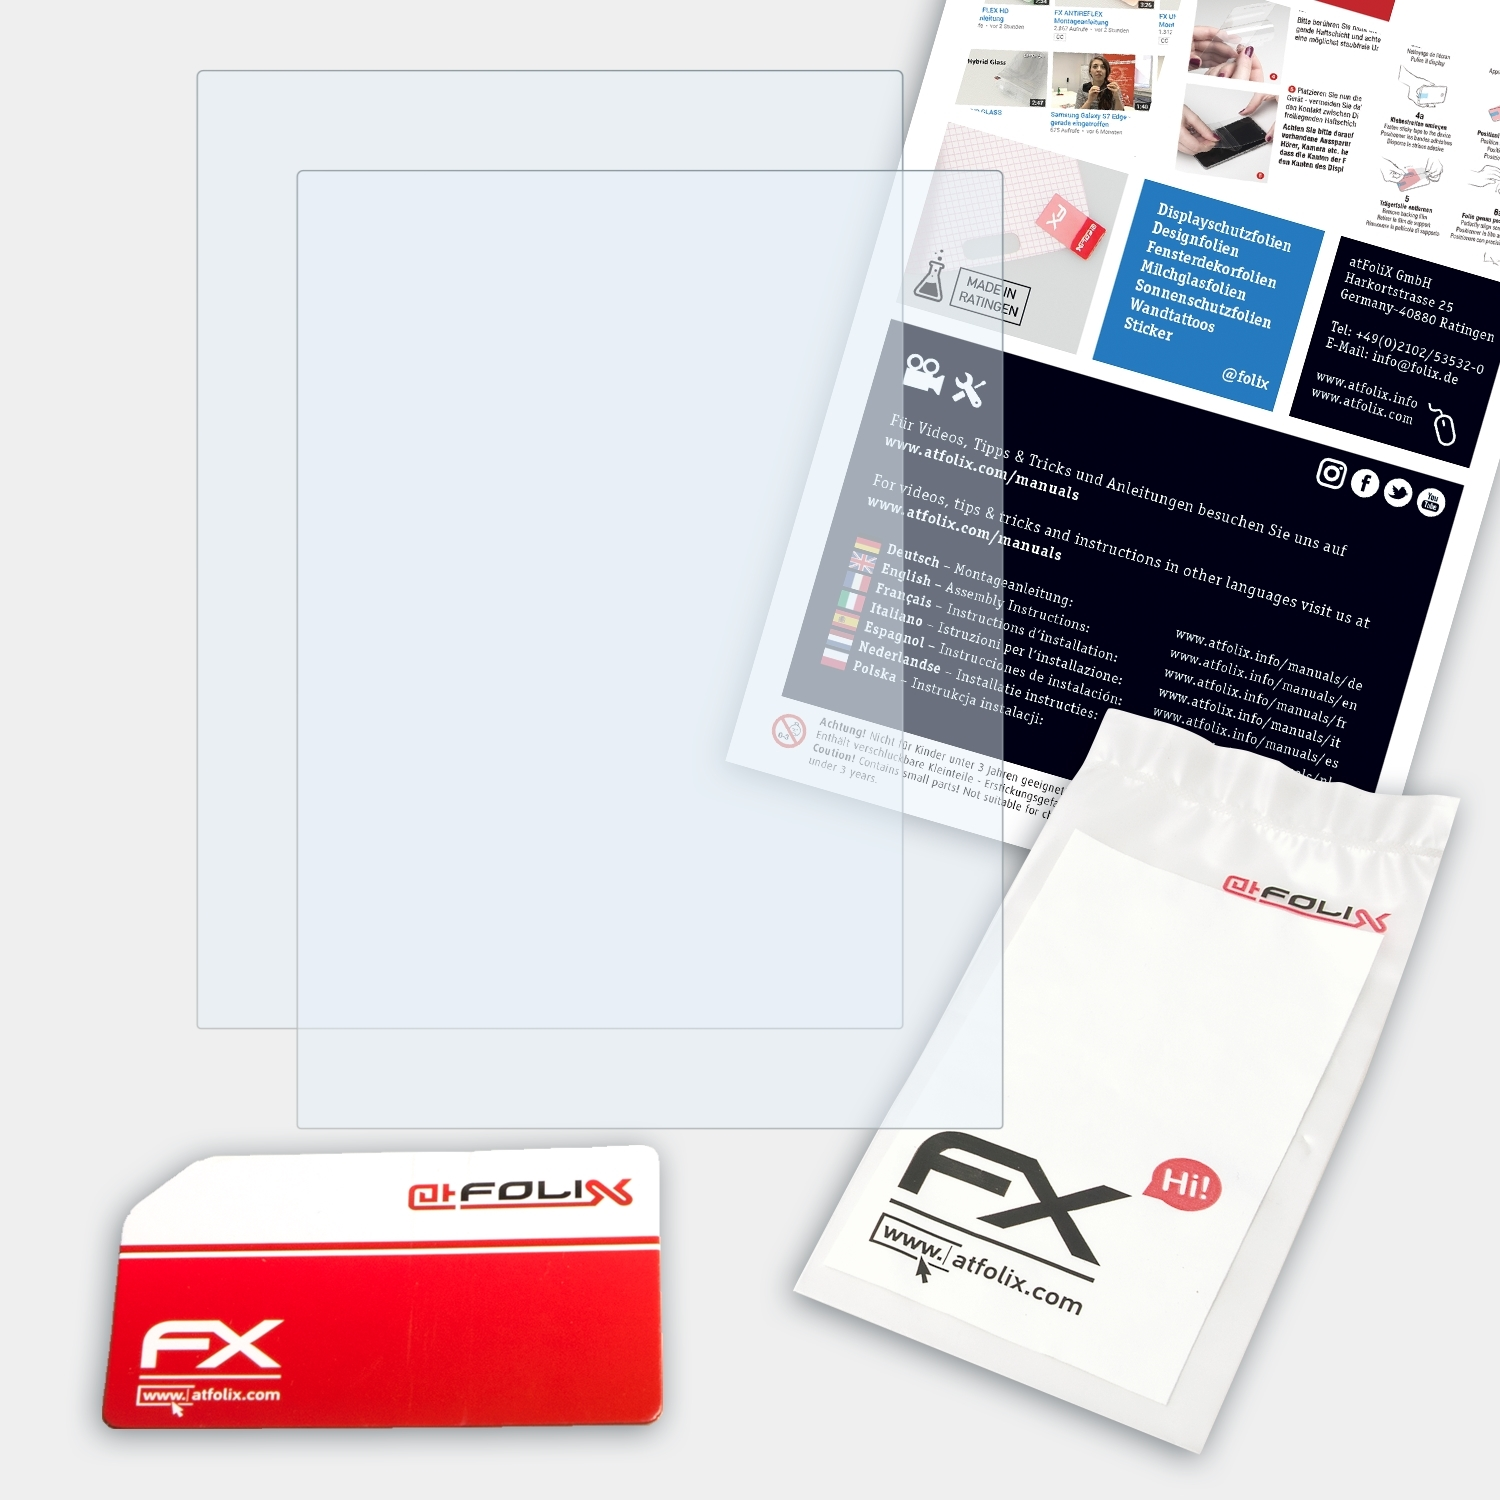 FX-Clear Sony Reader Touch Edition) 2x ATFOLIX Displayschutz(für PRS-650